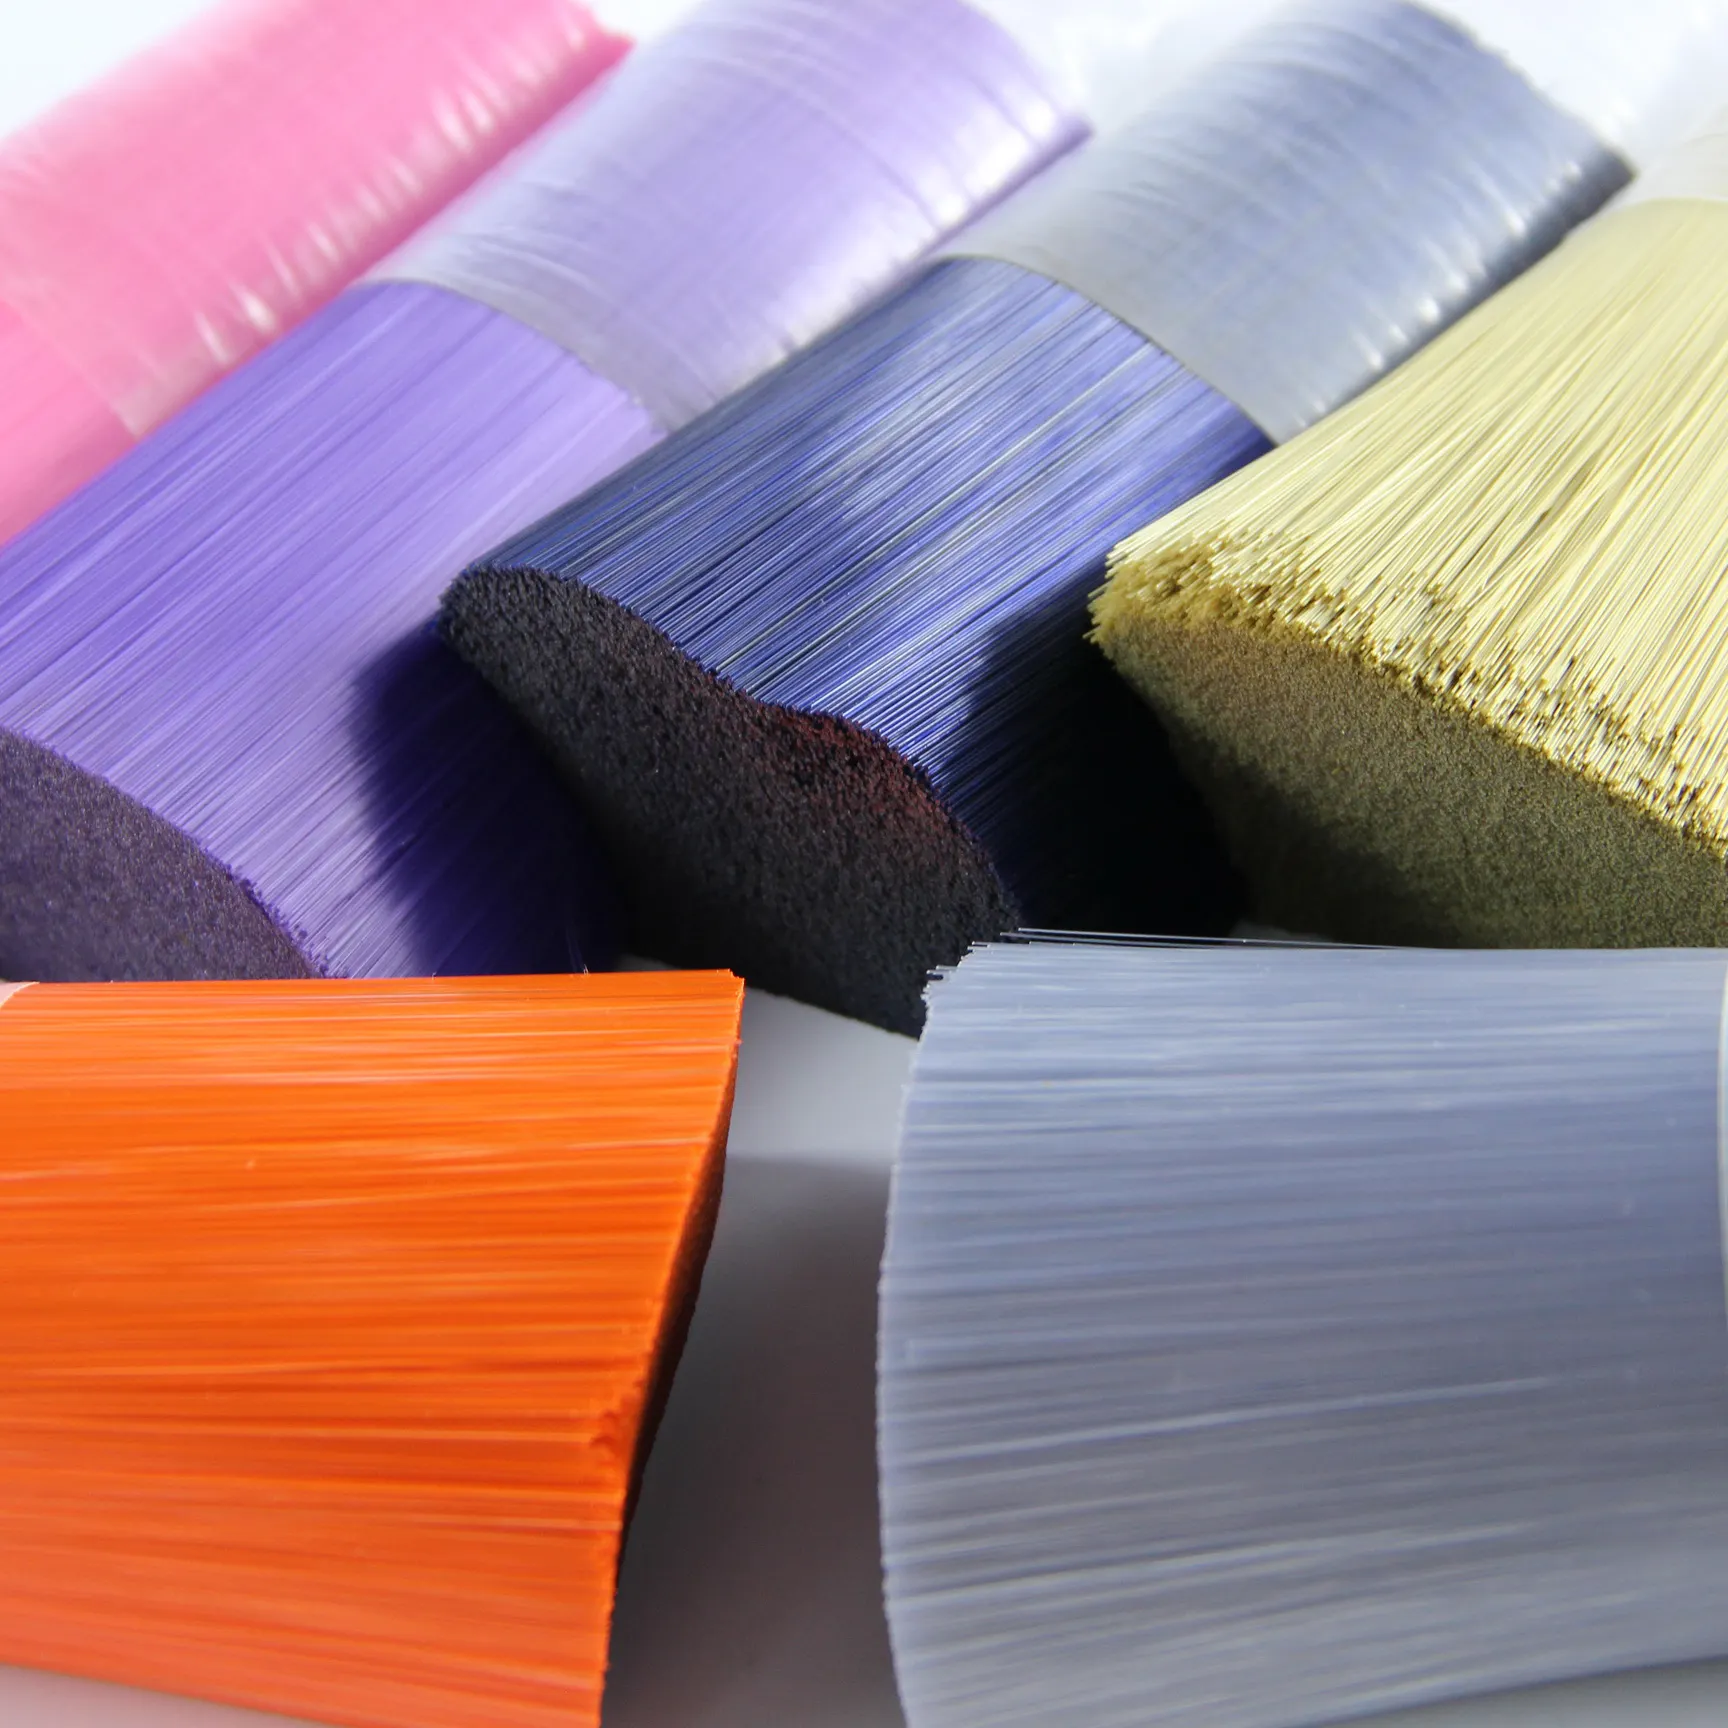 Materia prima del filamento di plastica di fascia alta per animali domestici in fibra sintetica per fare scopa e spazzola